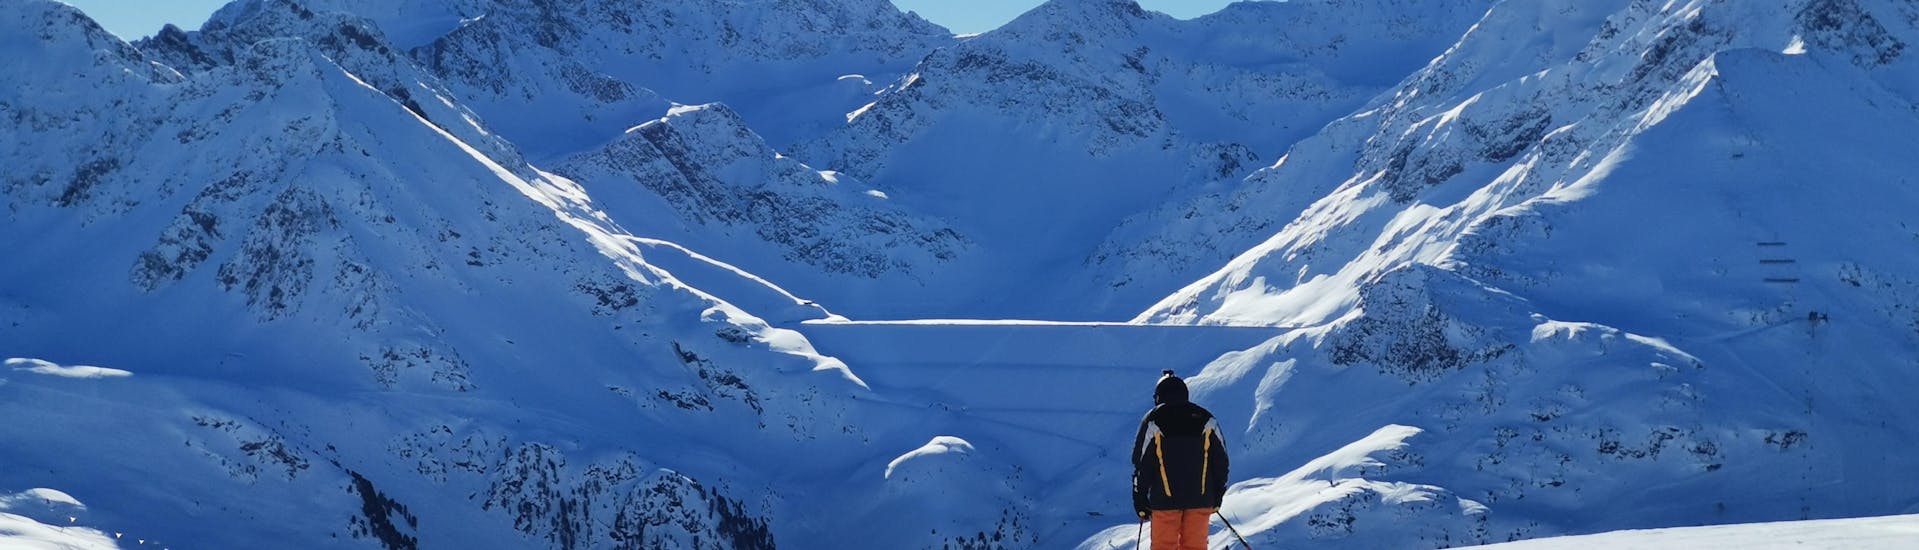 Ausblick auf die sonnige Berglandschaft beim Skifahren lernen mit den Skischulen in Kühtai.